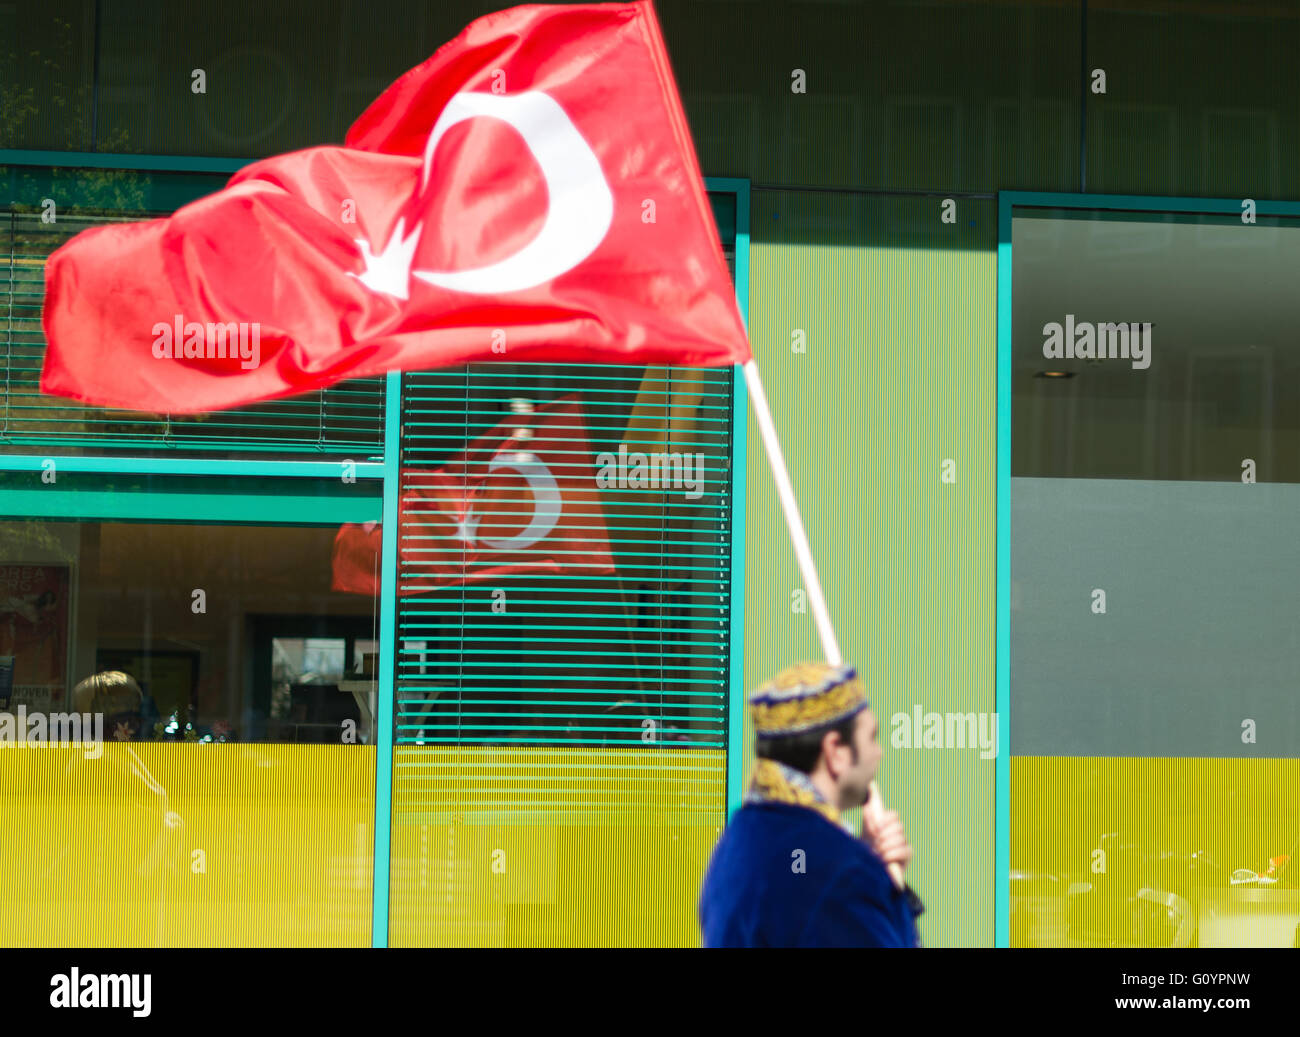 Hannover, Deutschland. 6. Mai 2016. Ein Mann im osmanischen Kostüm trägt eine türkische Flagge während einer Parade in Hannover, 6. Mai 2016. Familientag mit der türkischen Gemeinschaft Hannover vom 07. bis 8. Mai 2016 wurde bei der Parade befördert. Foto: SEBASTIAN GOLLNOW/Dpa/Alamy Live News Stockfoto